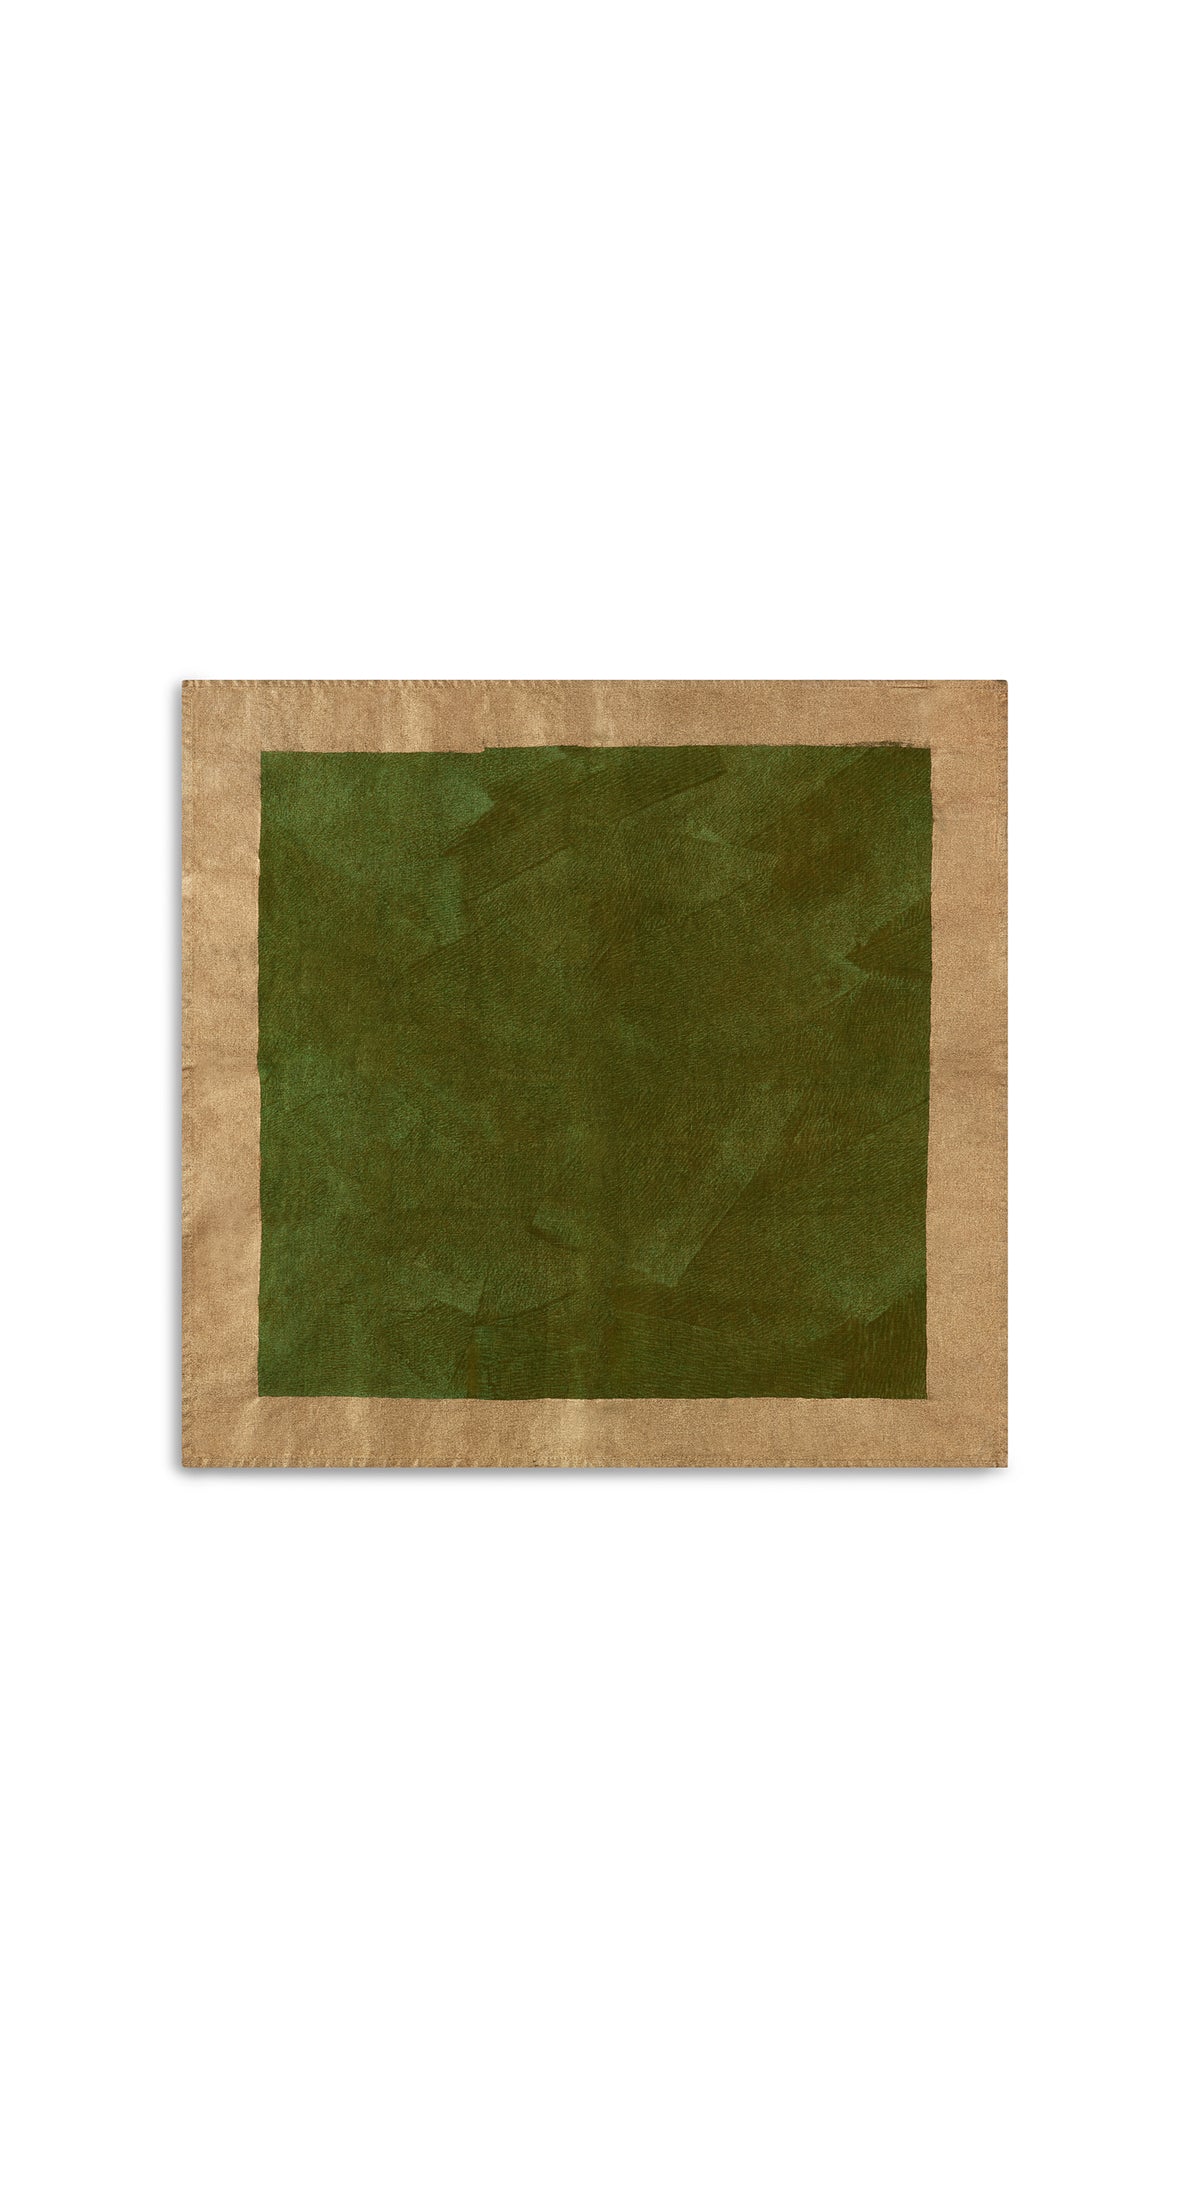 Gold Edge Linen Napkin in Avocado Green, 50x50cm